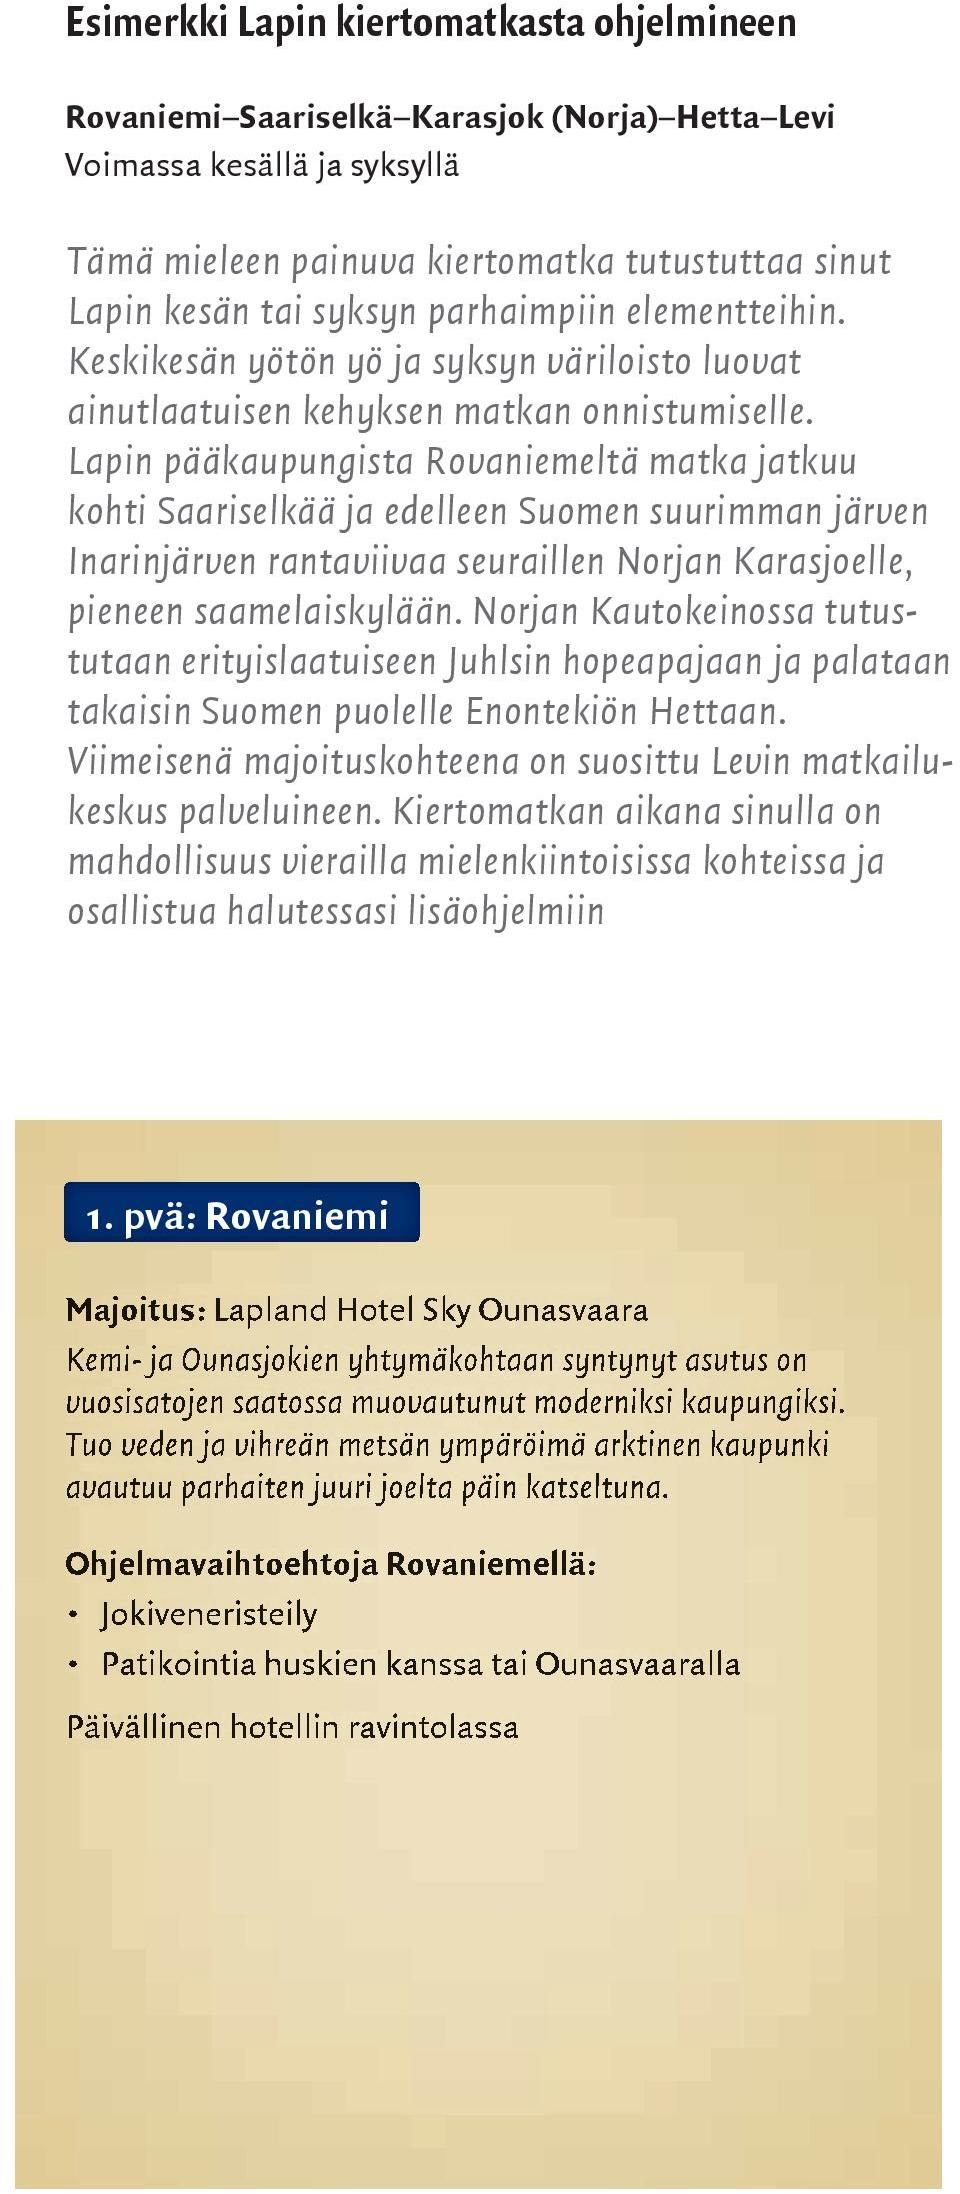 Lapin pääkaupungista Rovaniemeltä matka jatkuu kohti Saariselkää ja edelleen Suomen suurimman järven Inarinjärven rantaviivaa seuraillen Norjan Karasjoelle, pieneen saamelaiskylään.